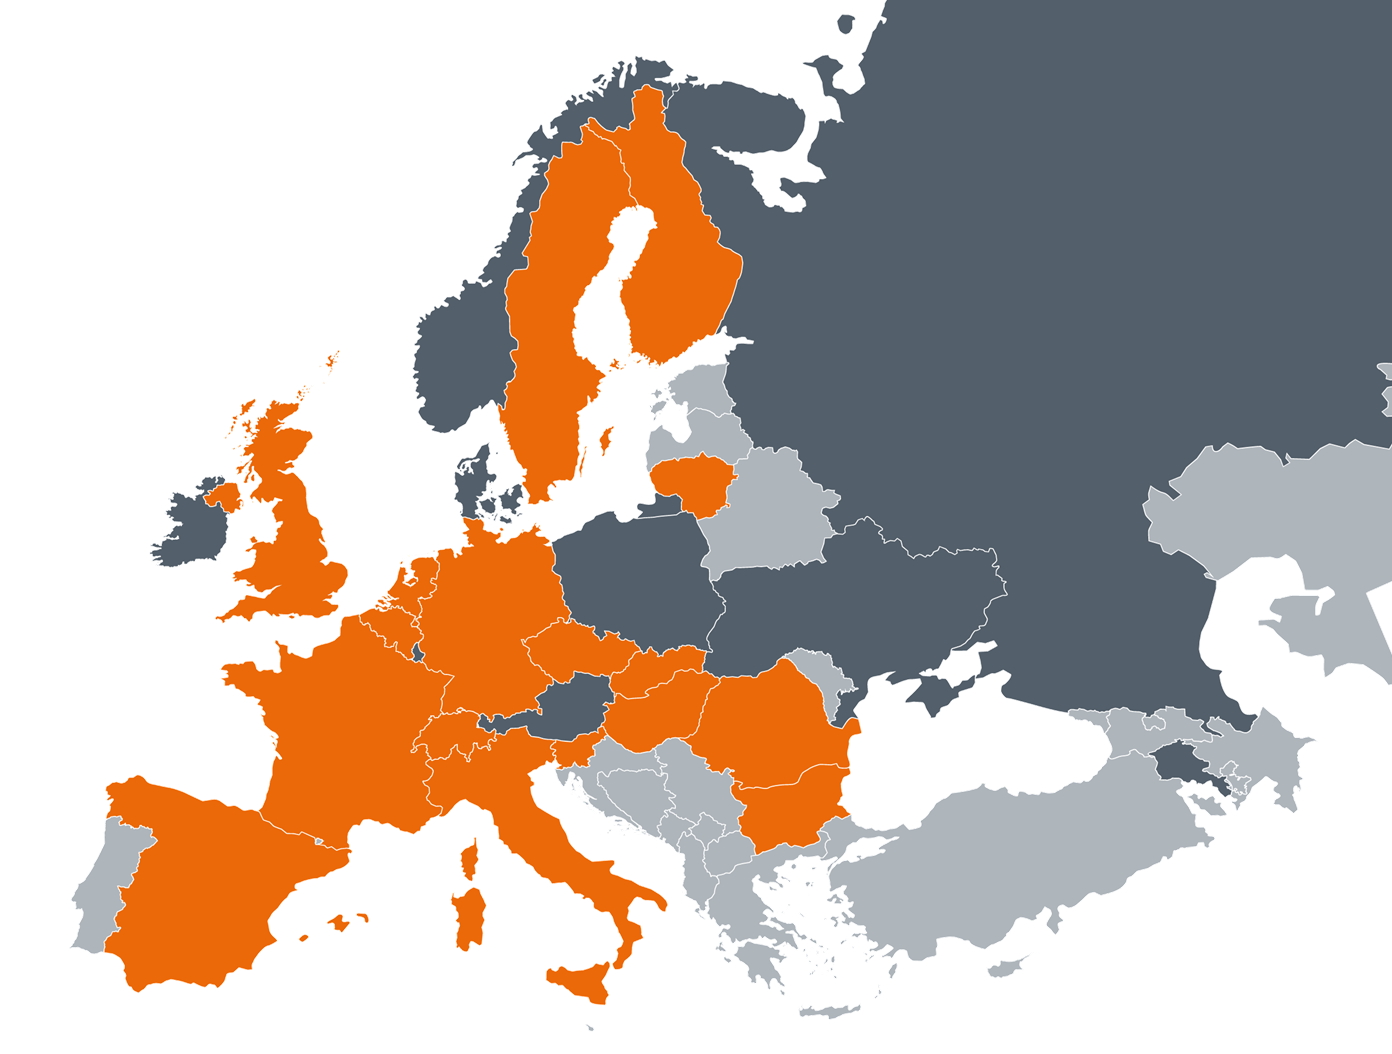 Einige Mitglieder der Europäischen Union und die Schweiz starteten im Jahr 1999 ihre Zusammenarbeit auf dem Gebiet der nuklearen Sicherheit in Europa. Mit der Erweiterung der EU wuchs auch die Zahl der Mitglieder der WENRA. Heute gehören der WENRA 17 europäische Staaten an. Neun Länder haben Beobachterstatus.